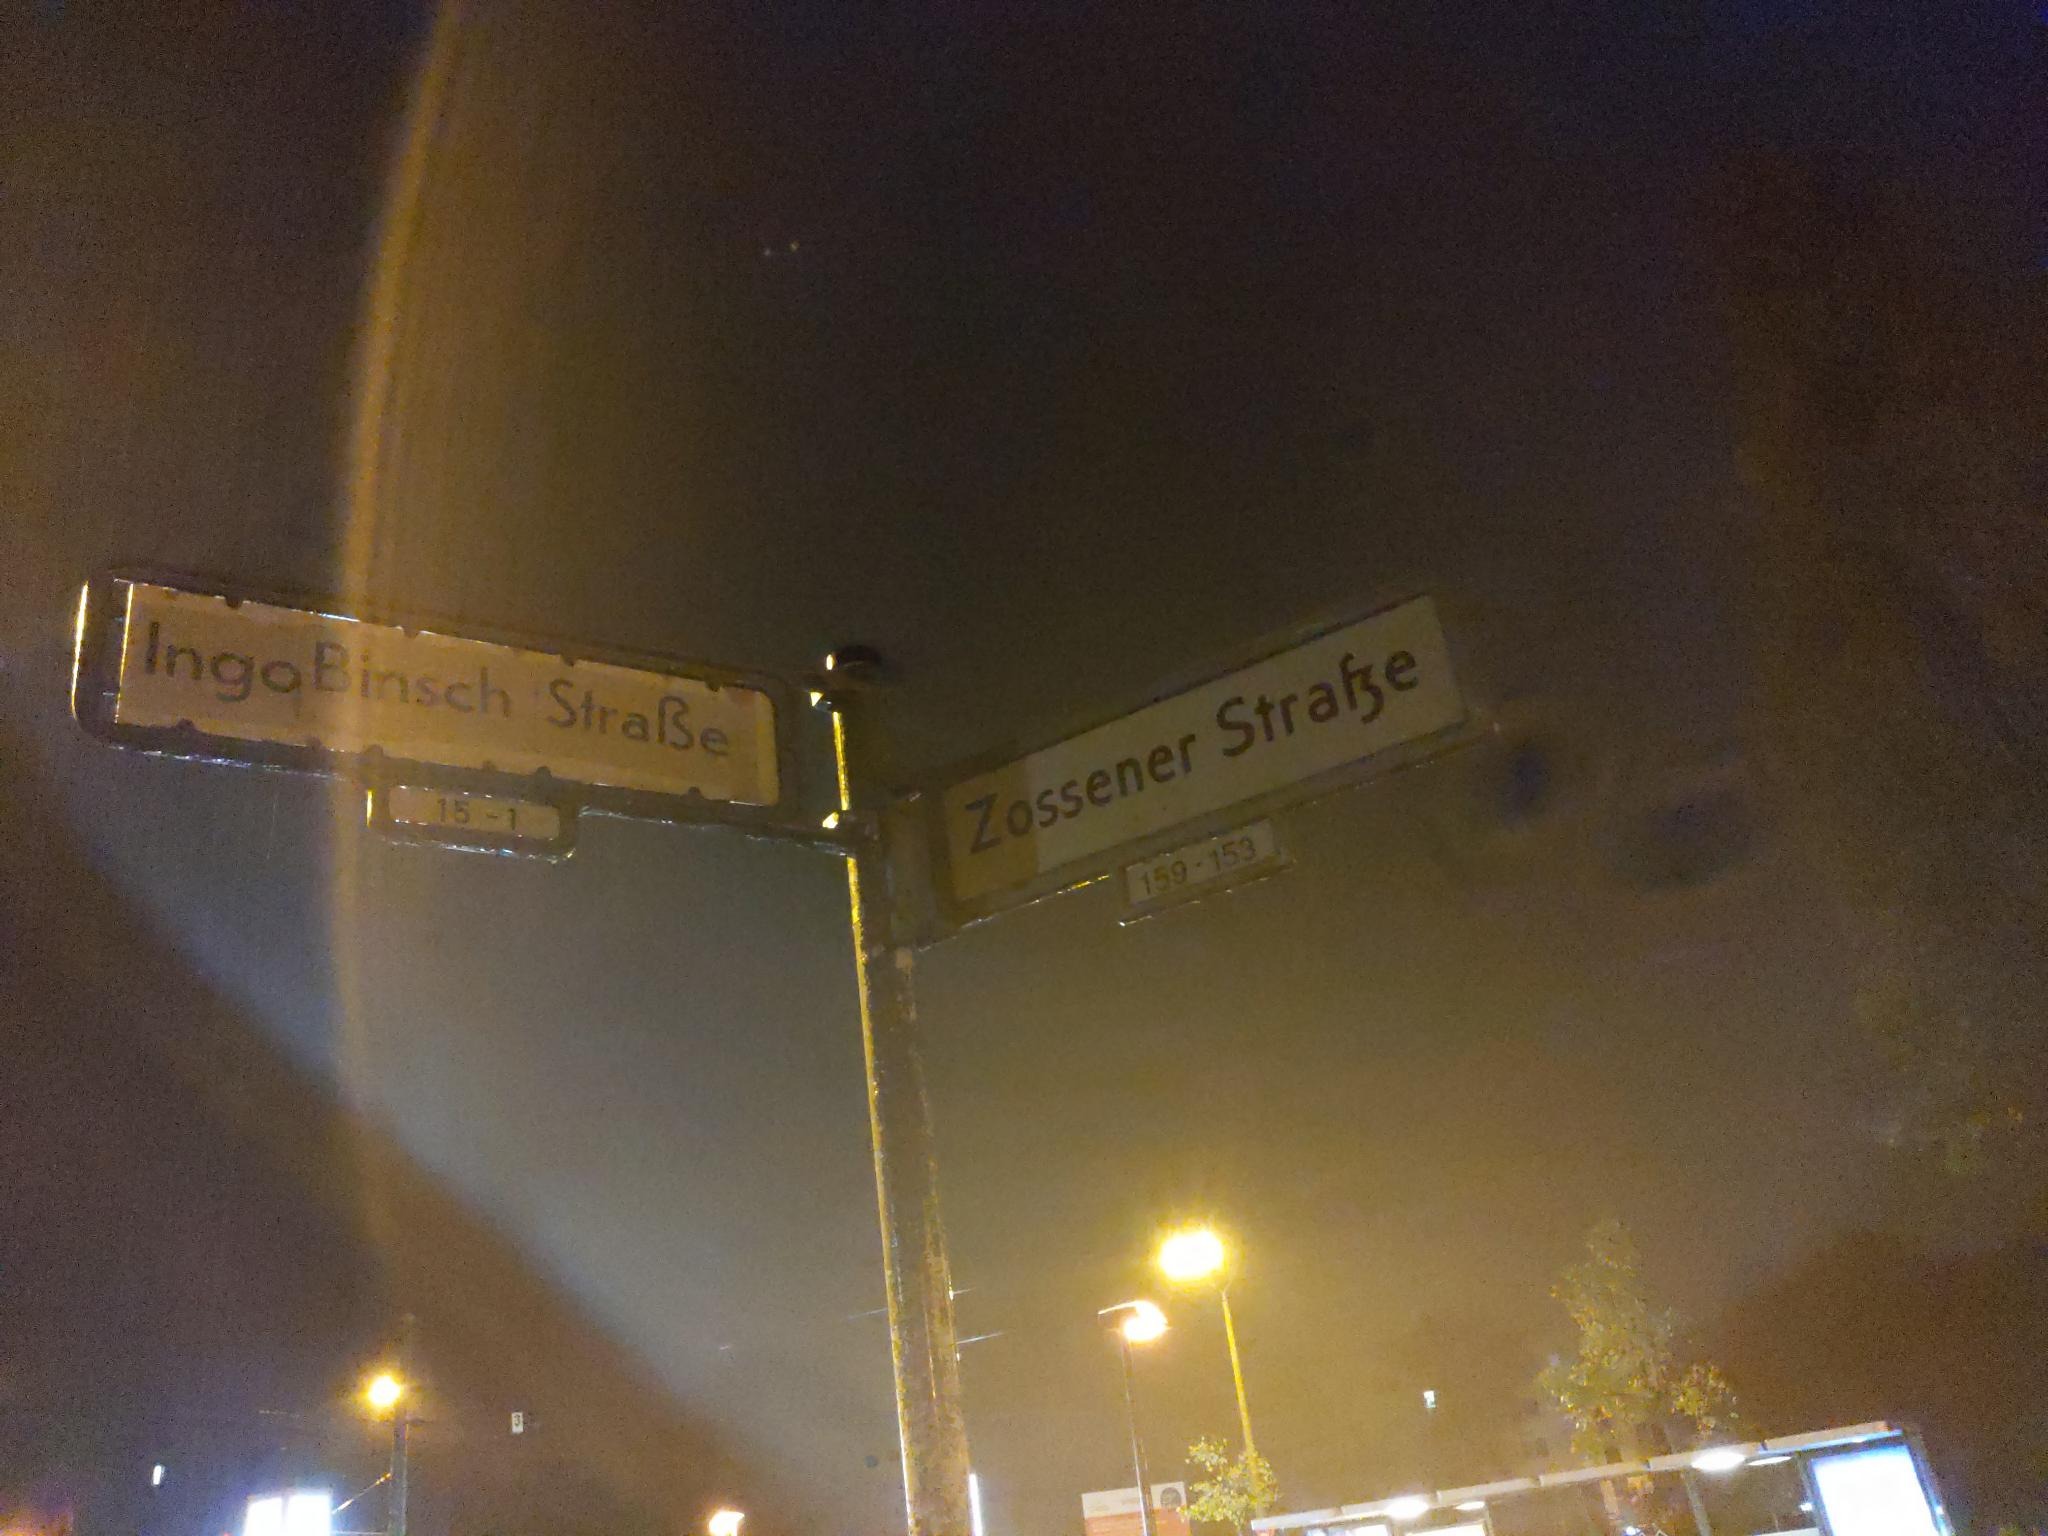 Straßenkreuzung, auf den Schildern steht: Ingo-Binsch-Str. / Zossener Str.